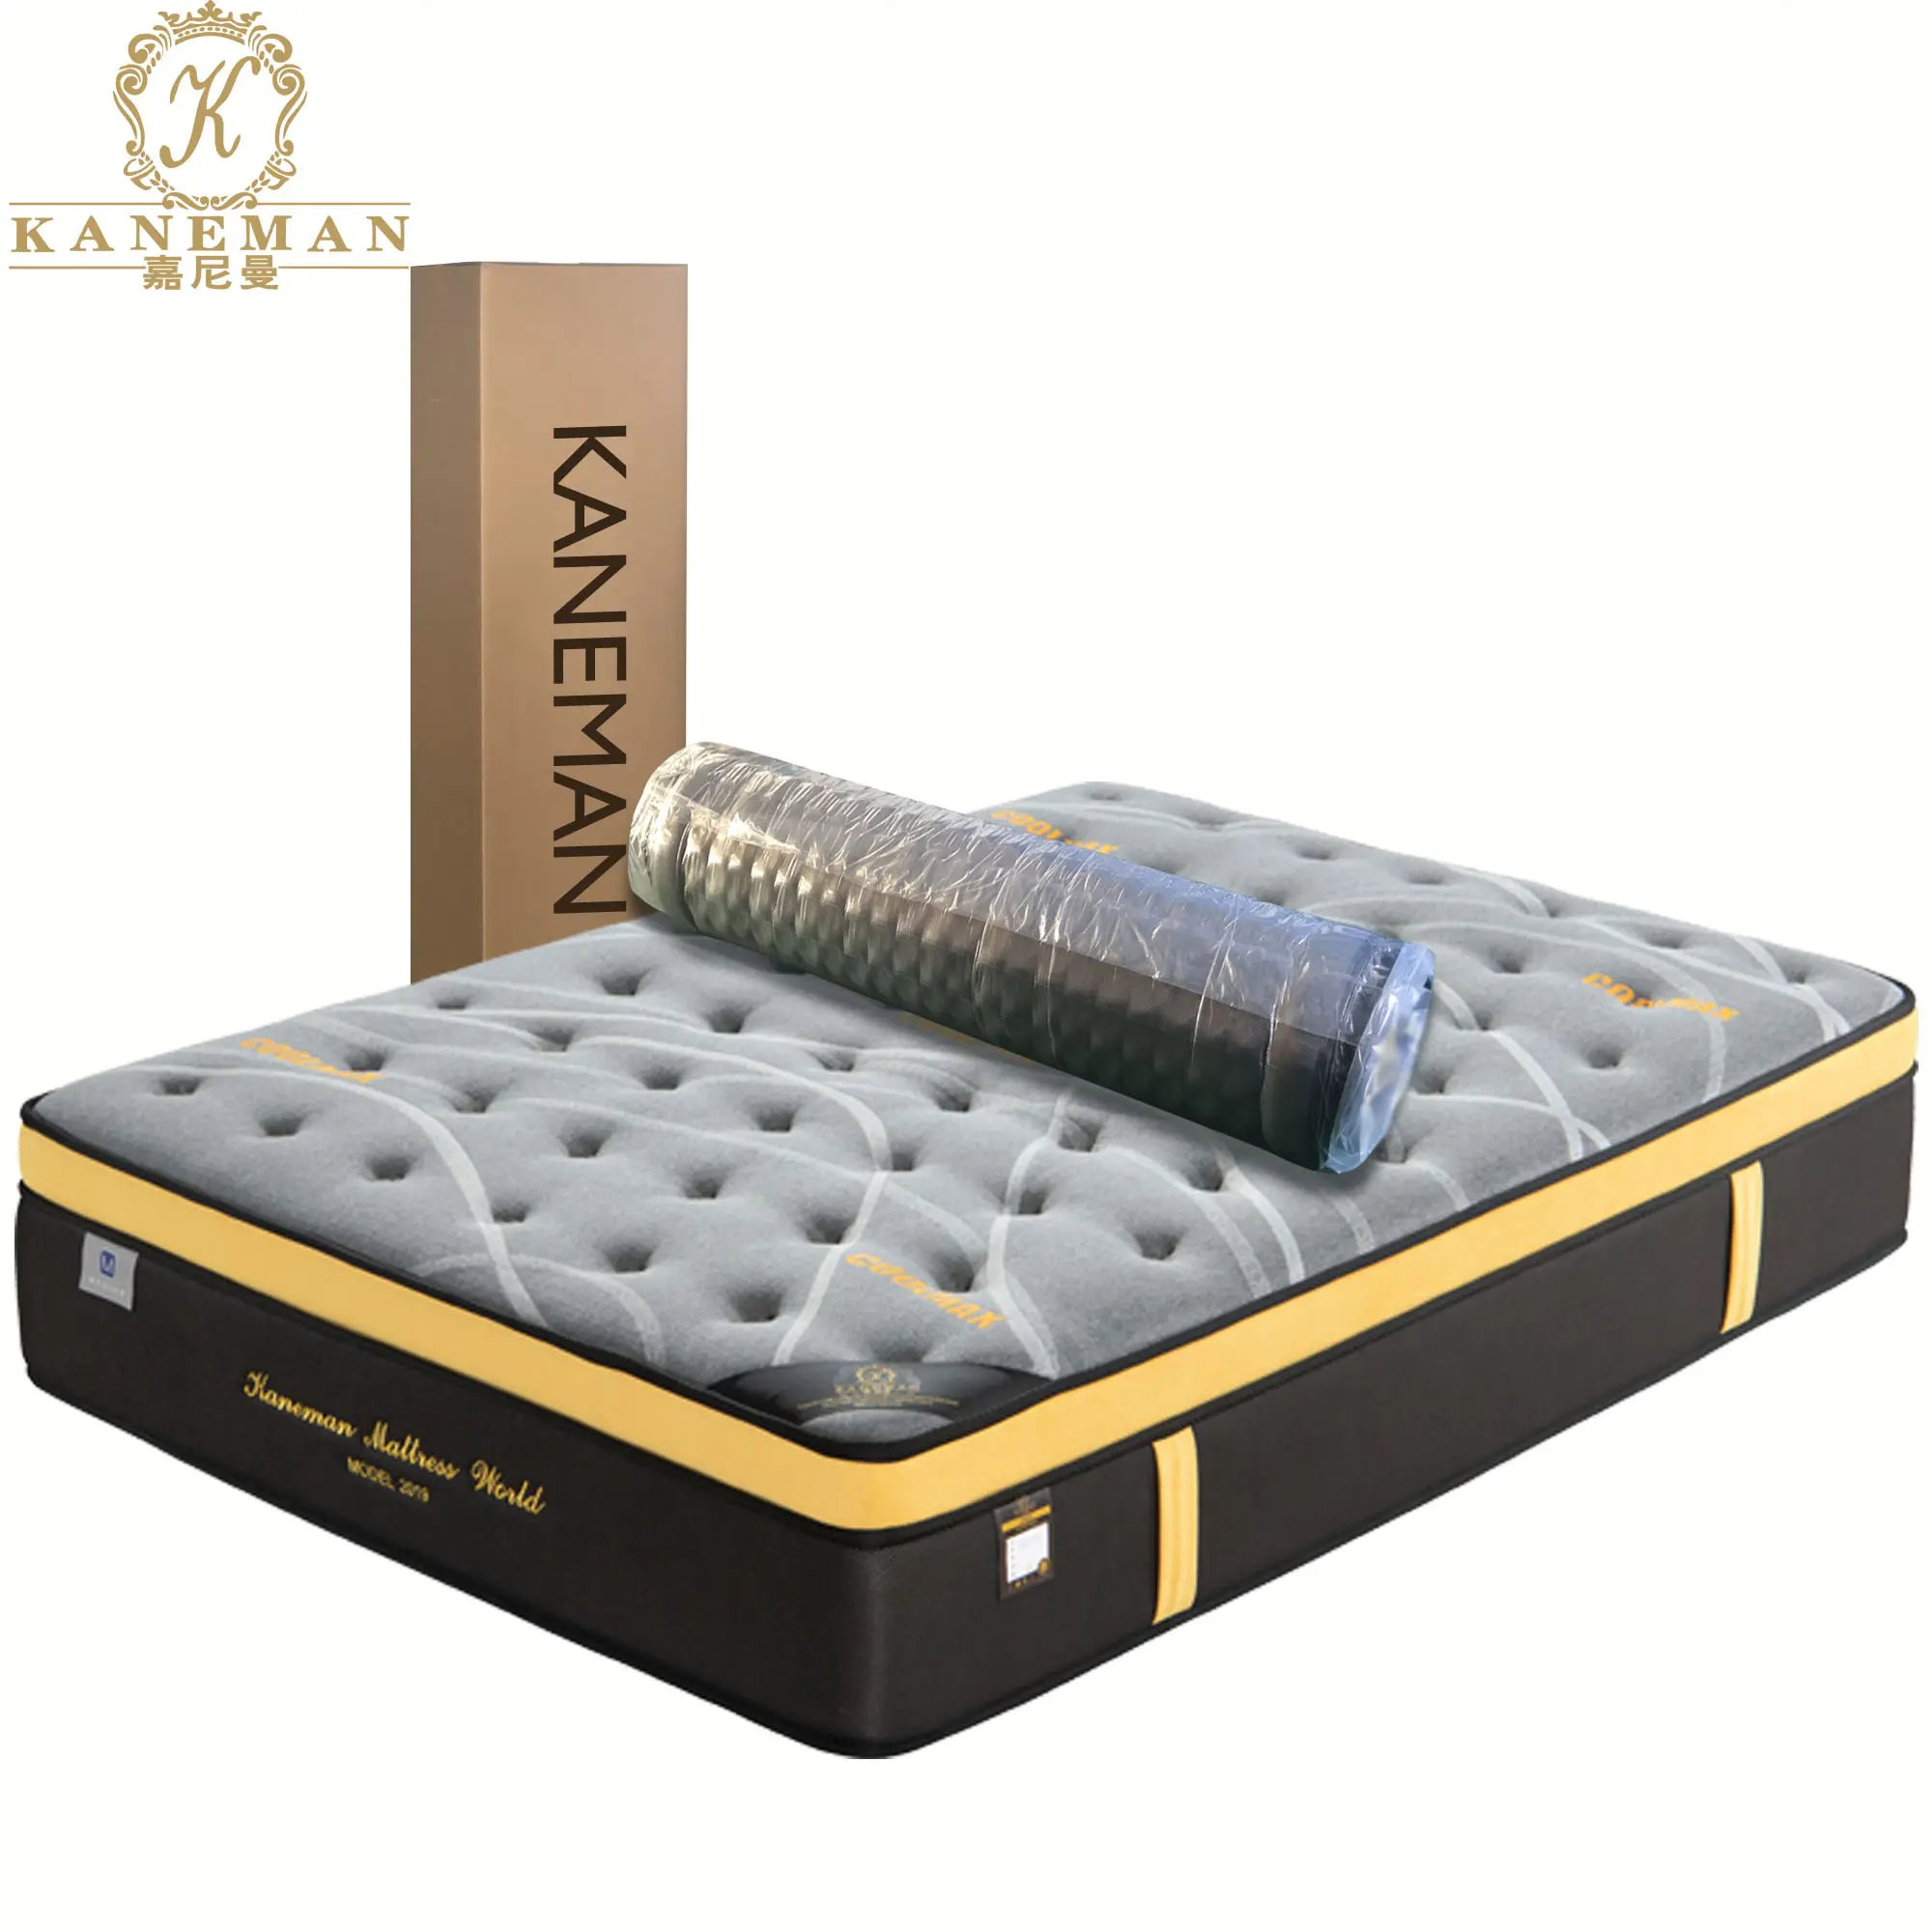 Stile popolare 30cm vuoto roll up pocket primavera letto materasso in un rotolo di scatola imballaggio materasso in una scatola